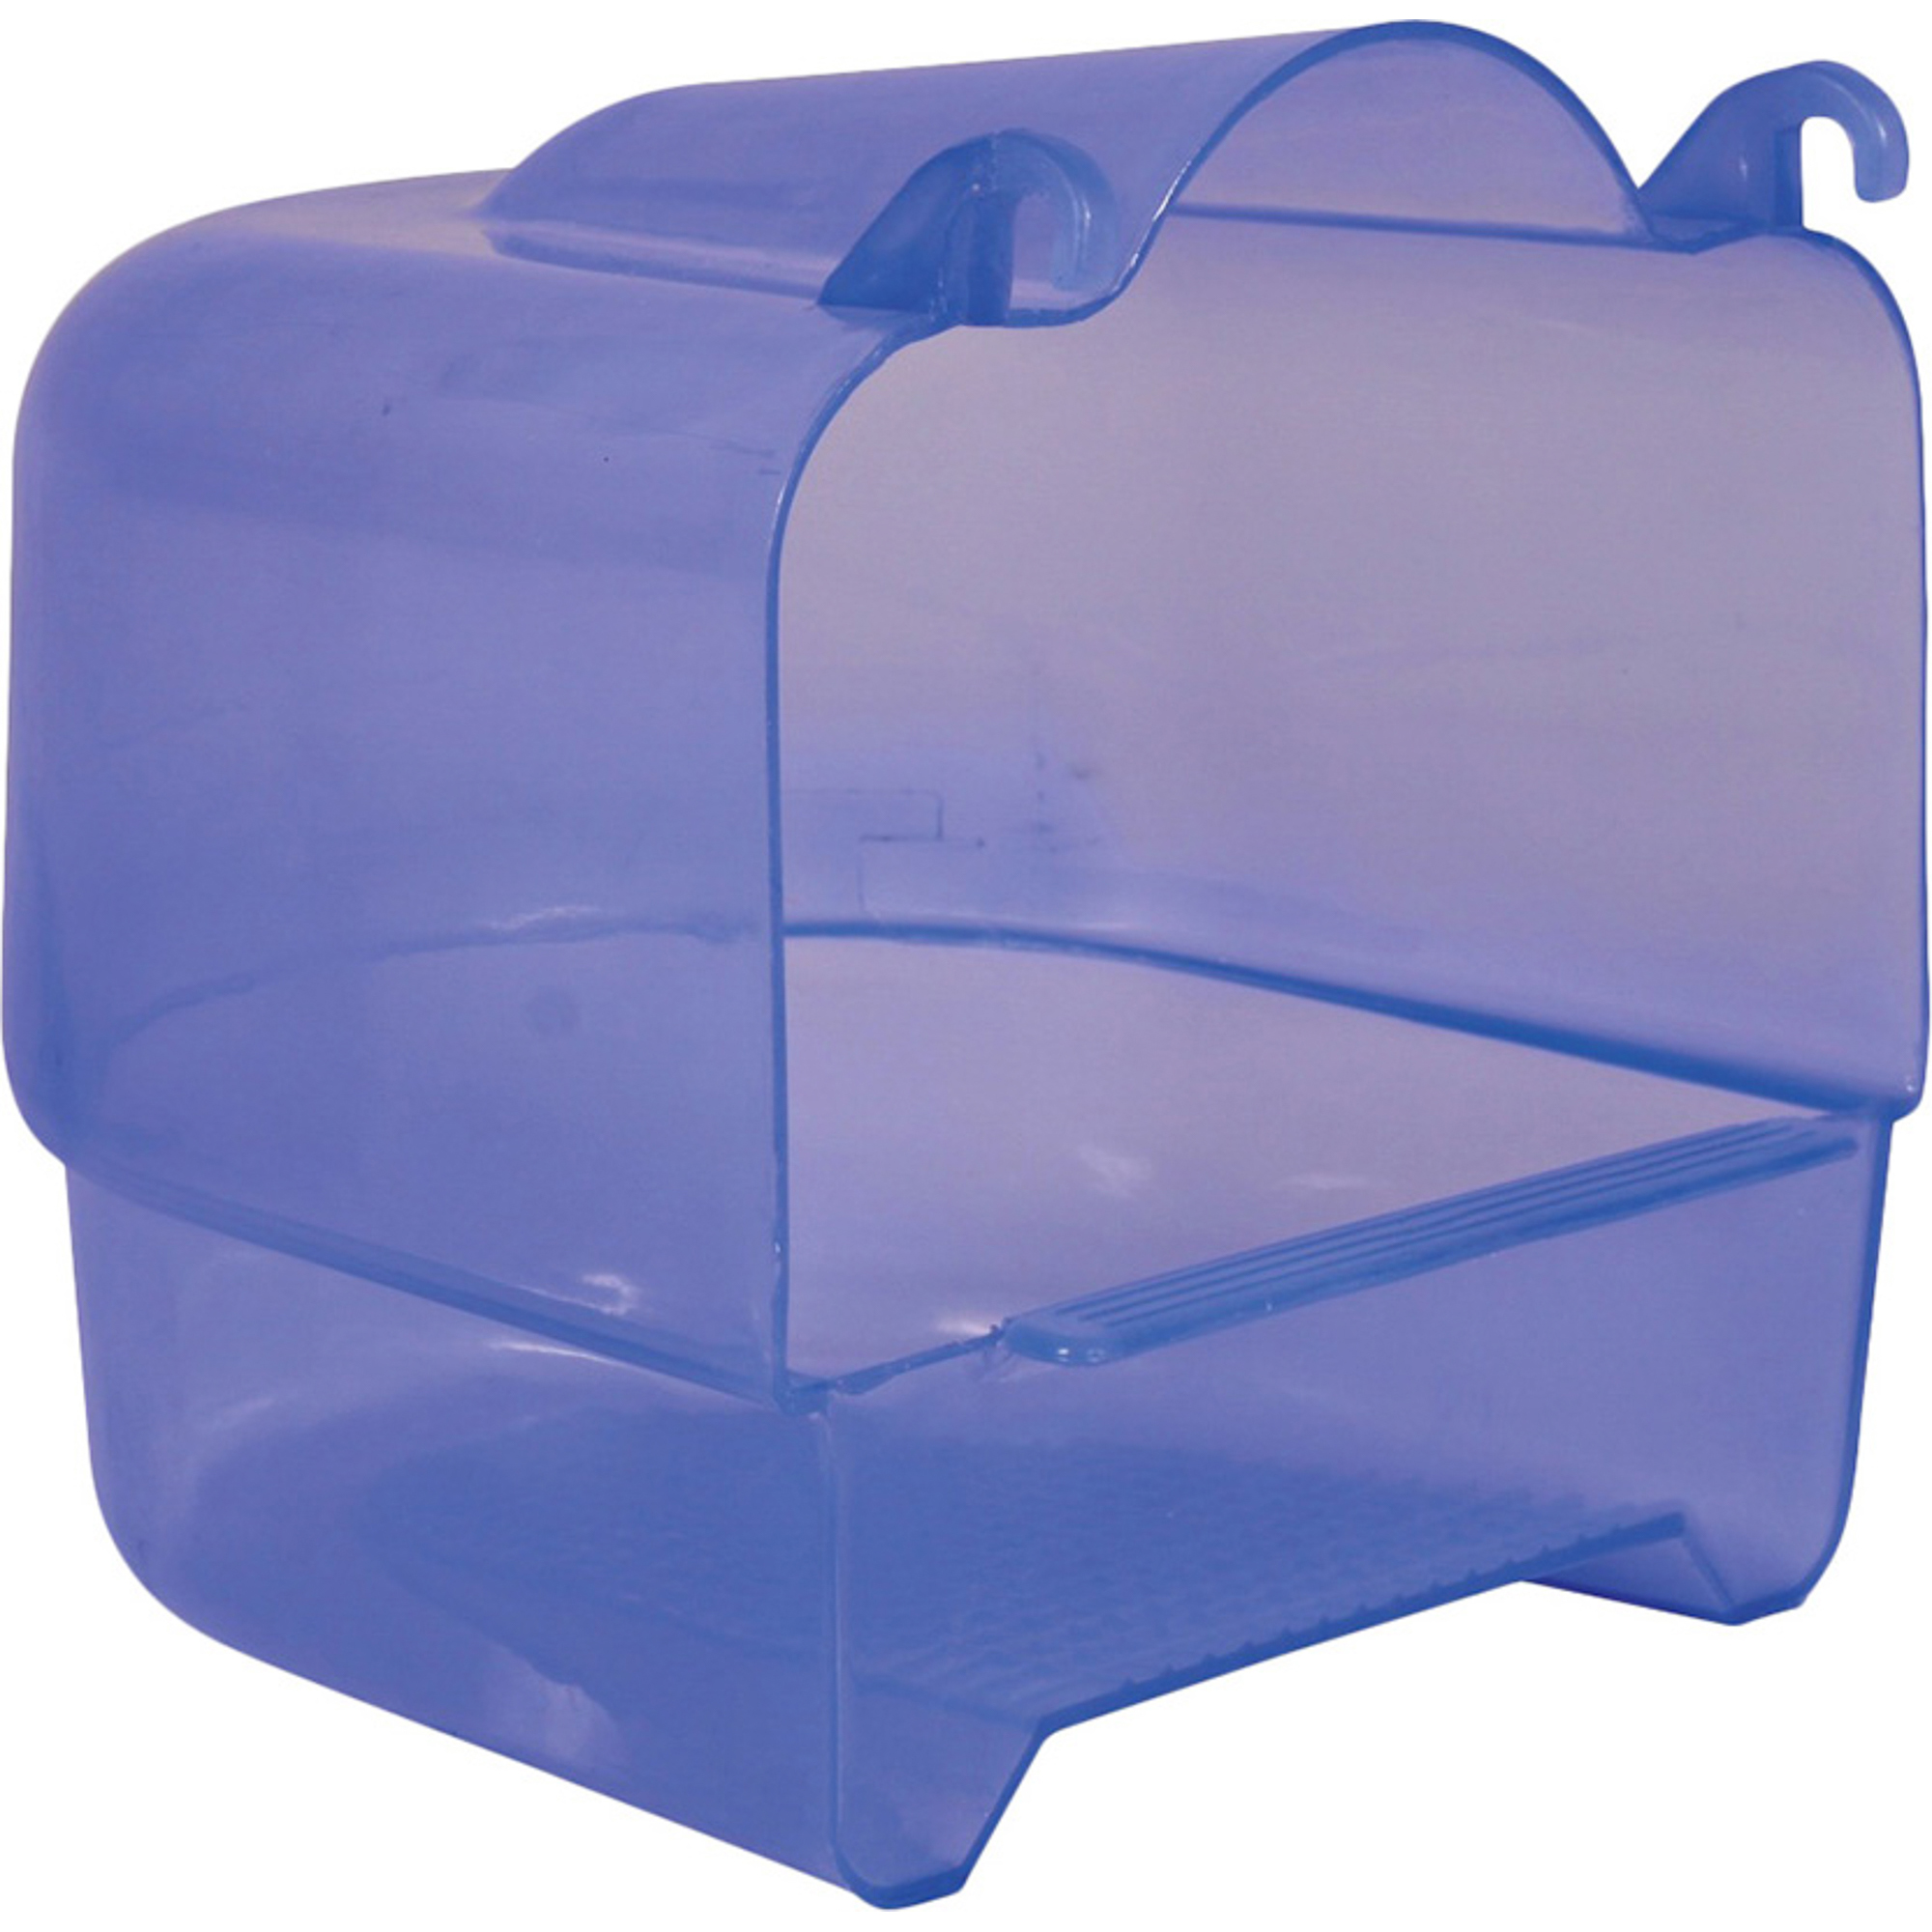 Купалка для птиц TRIXIE Пластиковая прозрачно-голубая игрушка для грызунов trixie качели для хомяка 25х9см